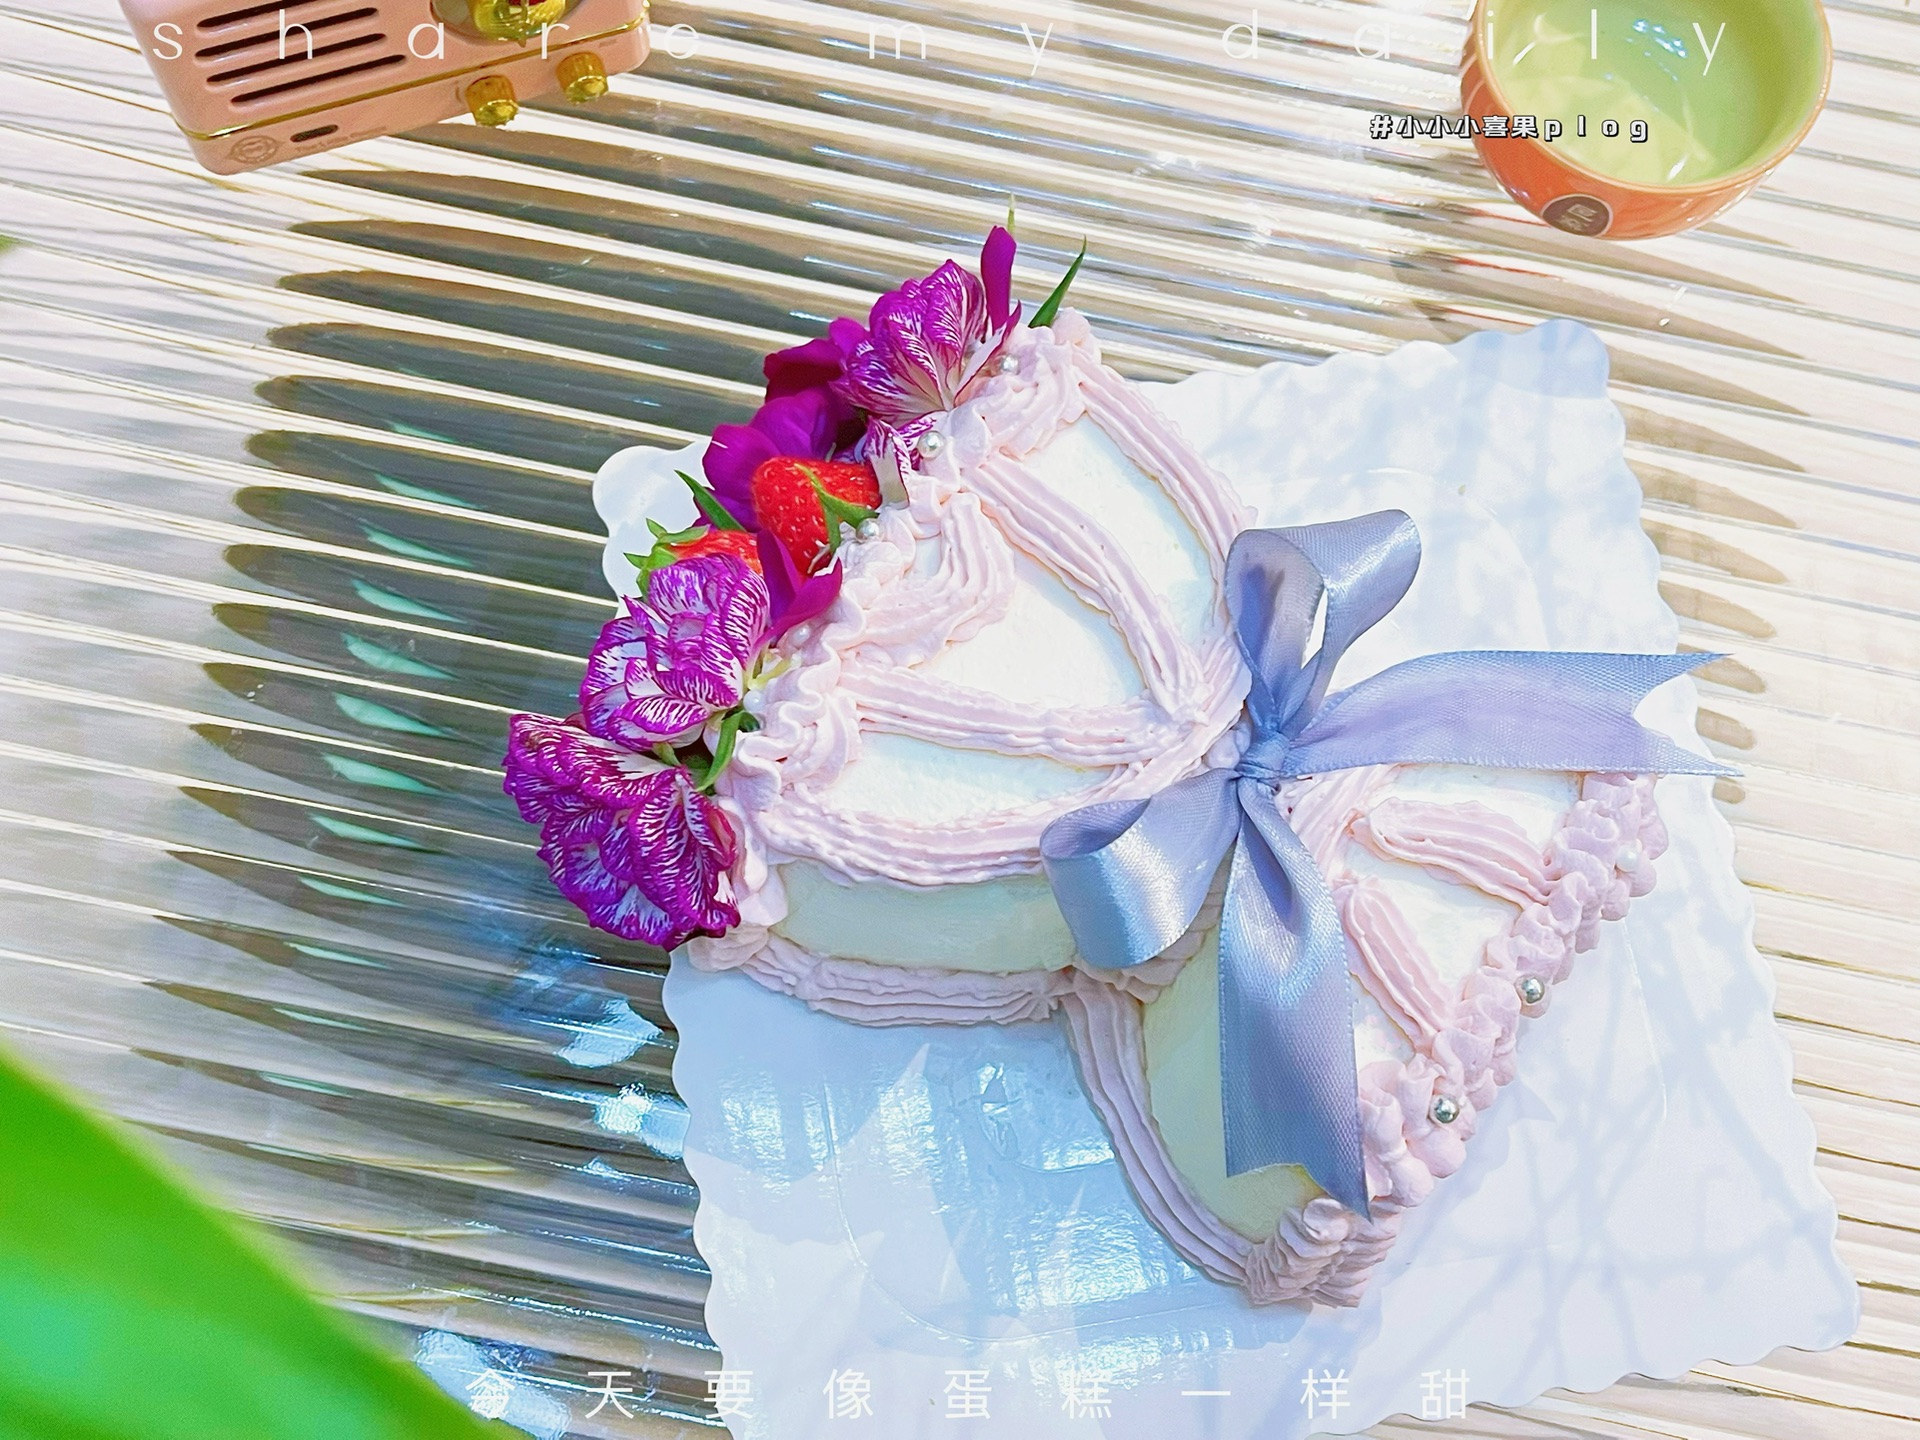 生日花束+蛋糕配套 Flower+ Cake Bundle Set 07 – Online Florist Johor